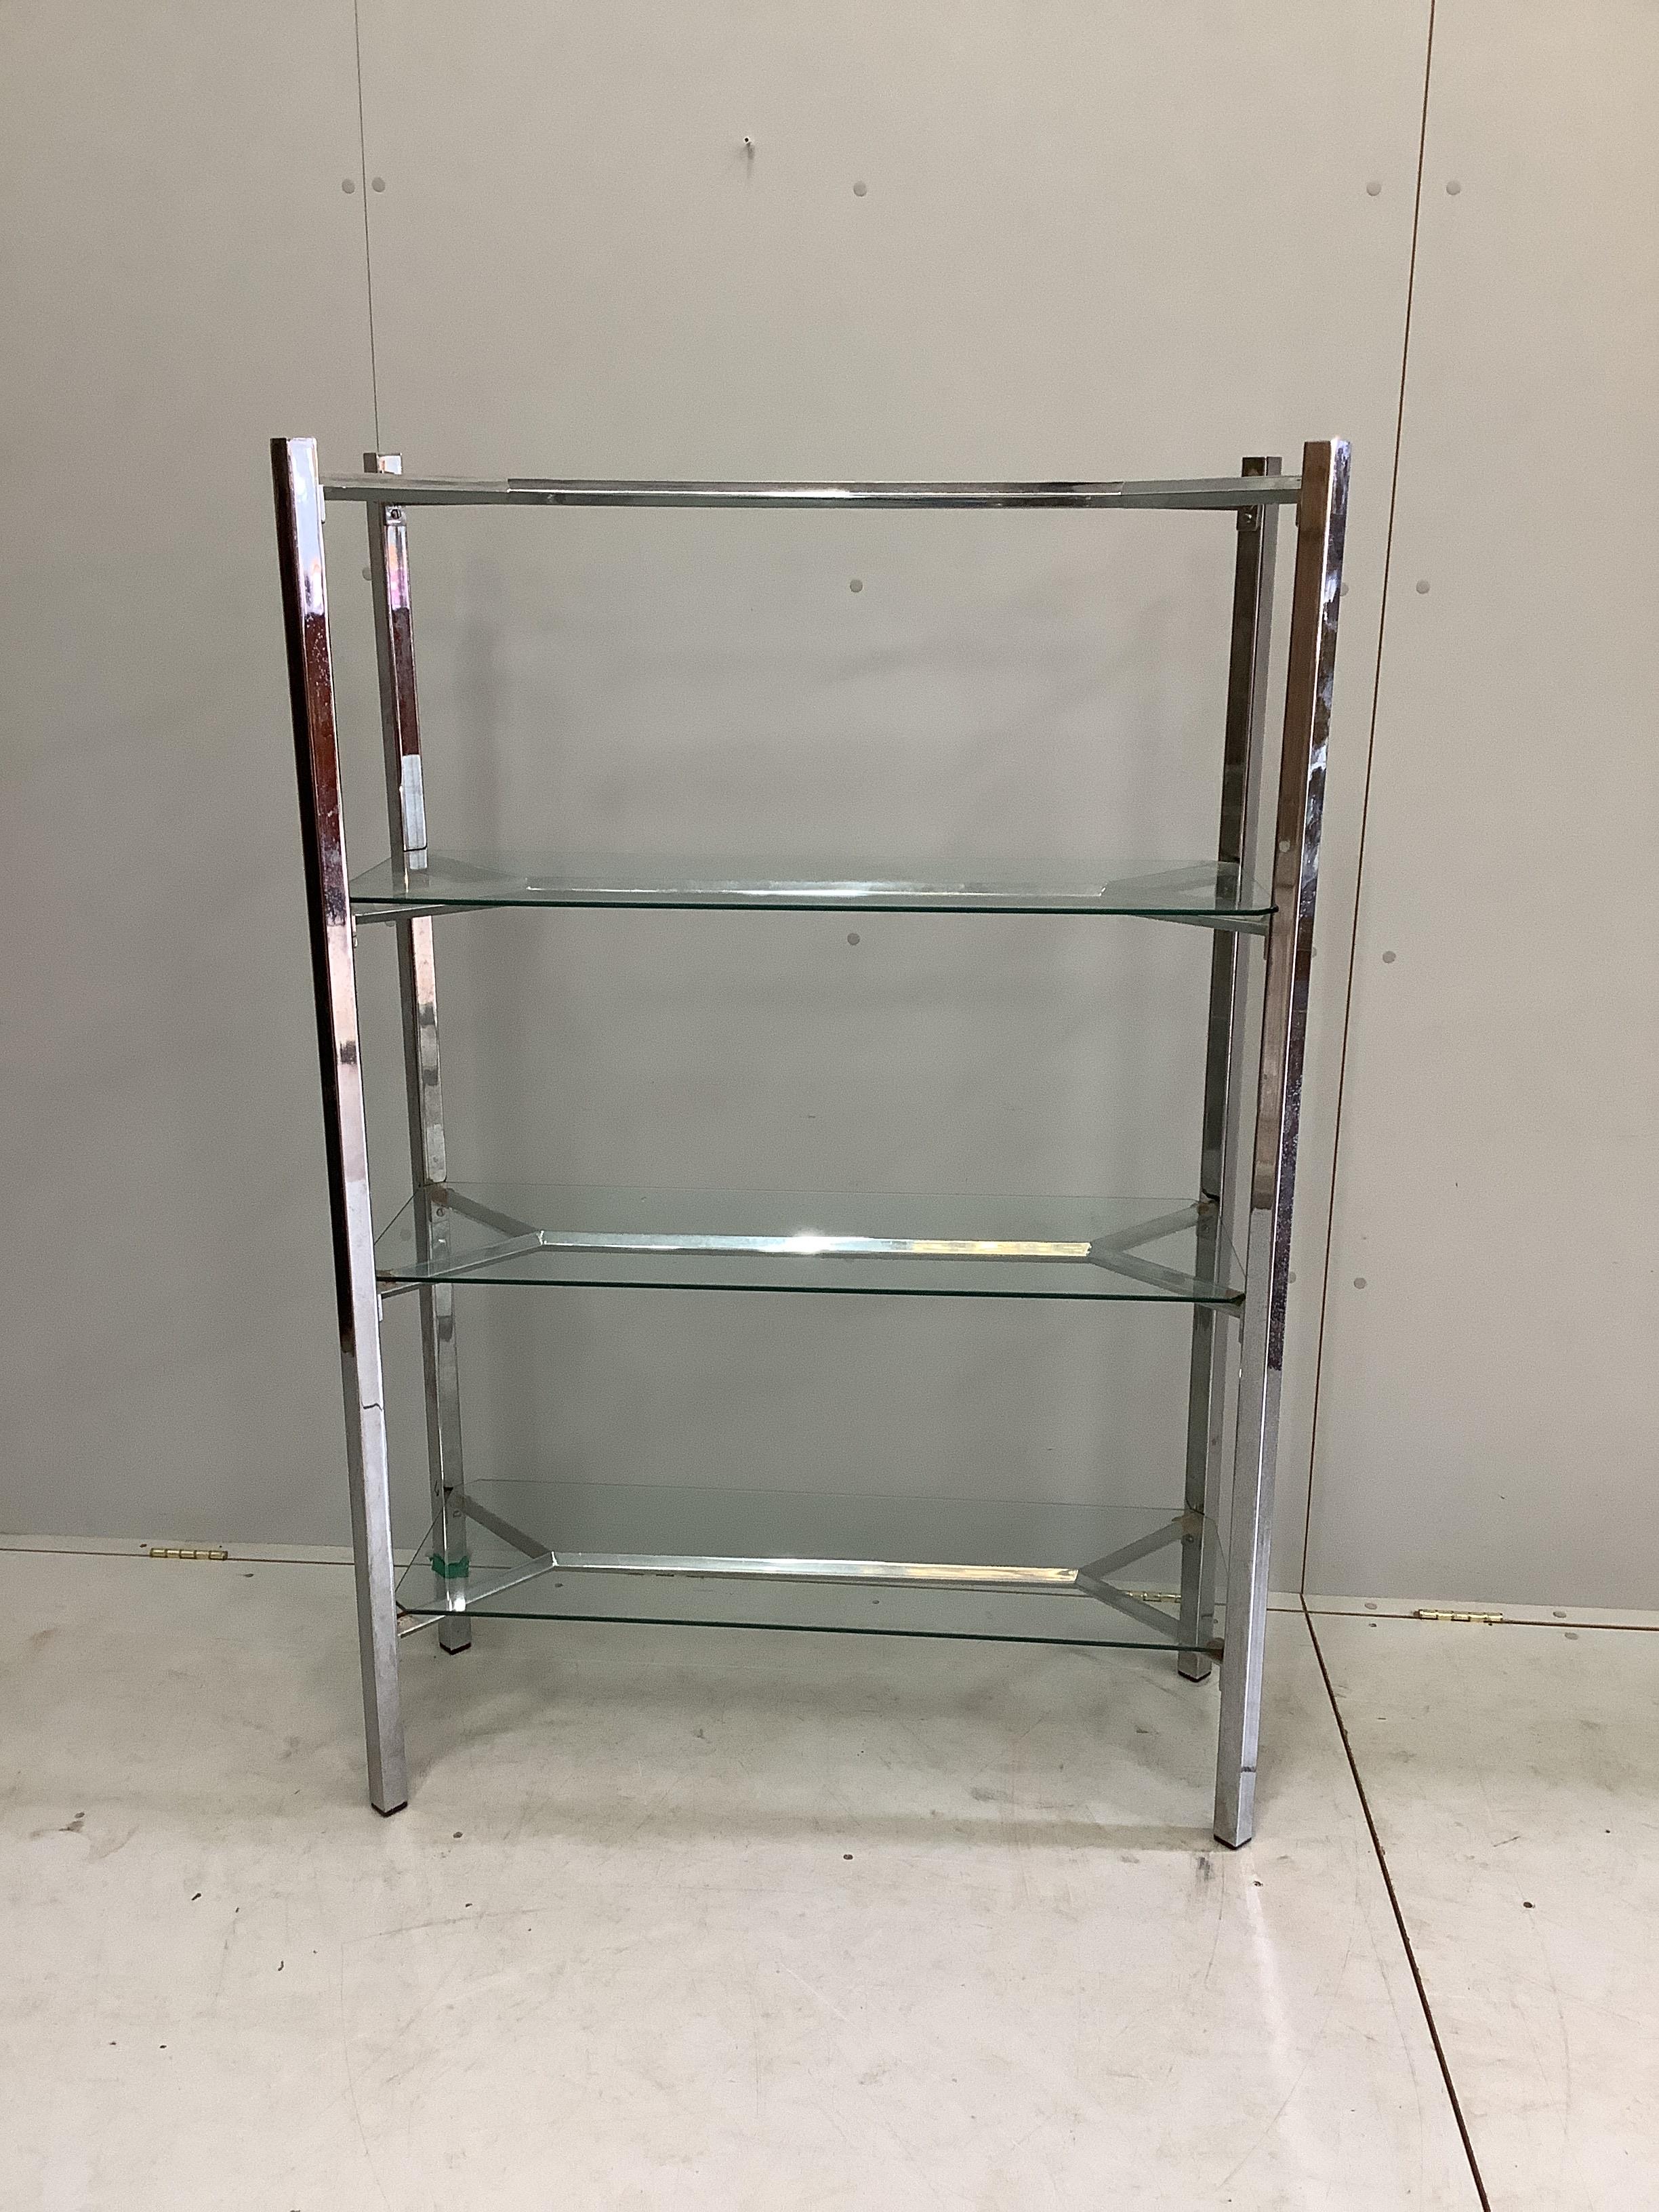 A contemporary chrome and glass three tier shelf unit, width 99cm, depth 38cm, height 147cm. Condition - fair